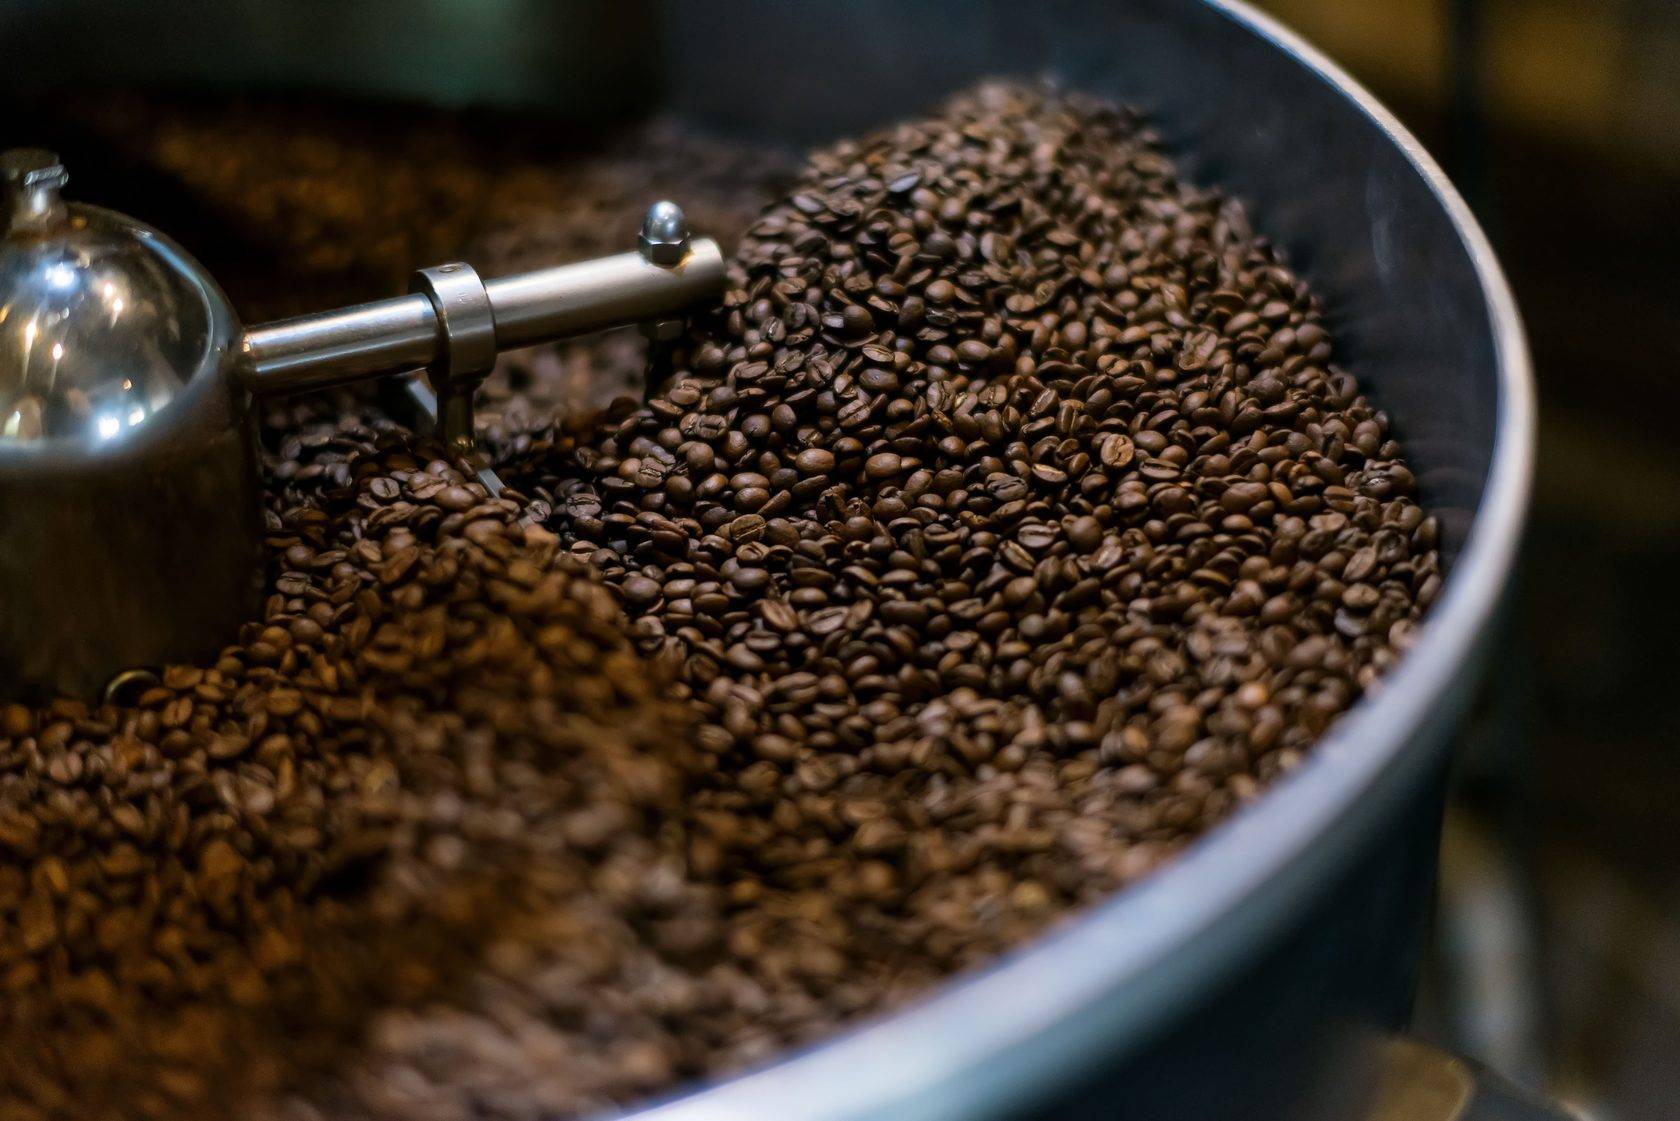 Помощник любителей кофе — ростер для обжарки кофейных зерен